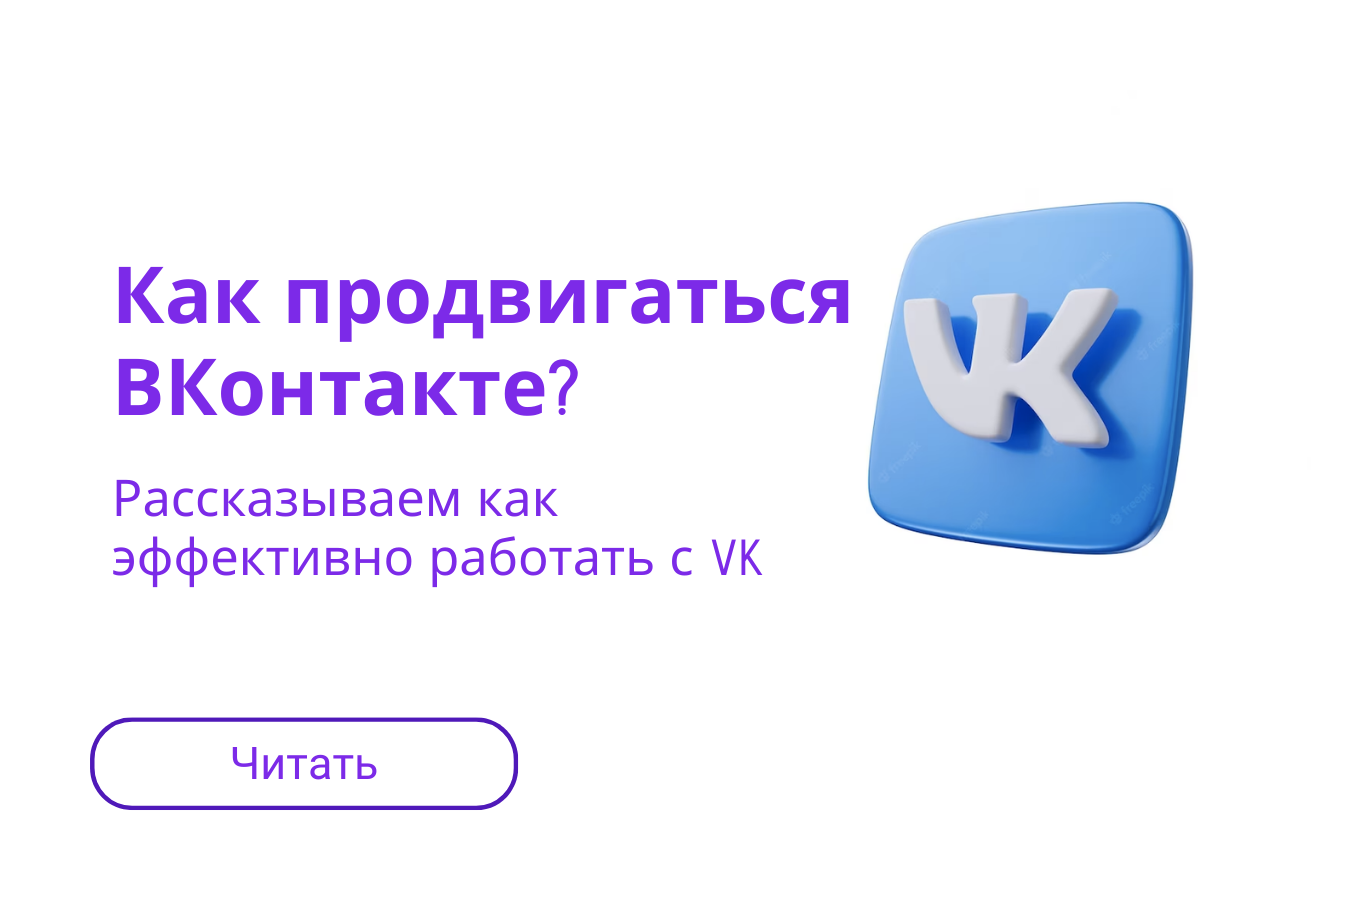  Как продвигаться Вконтакте?